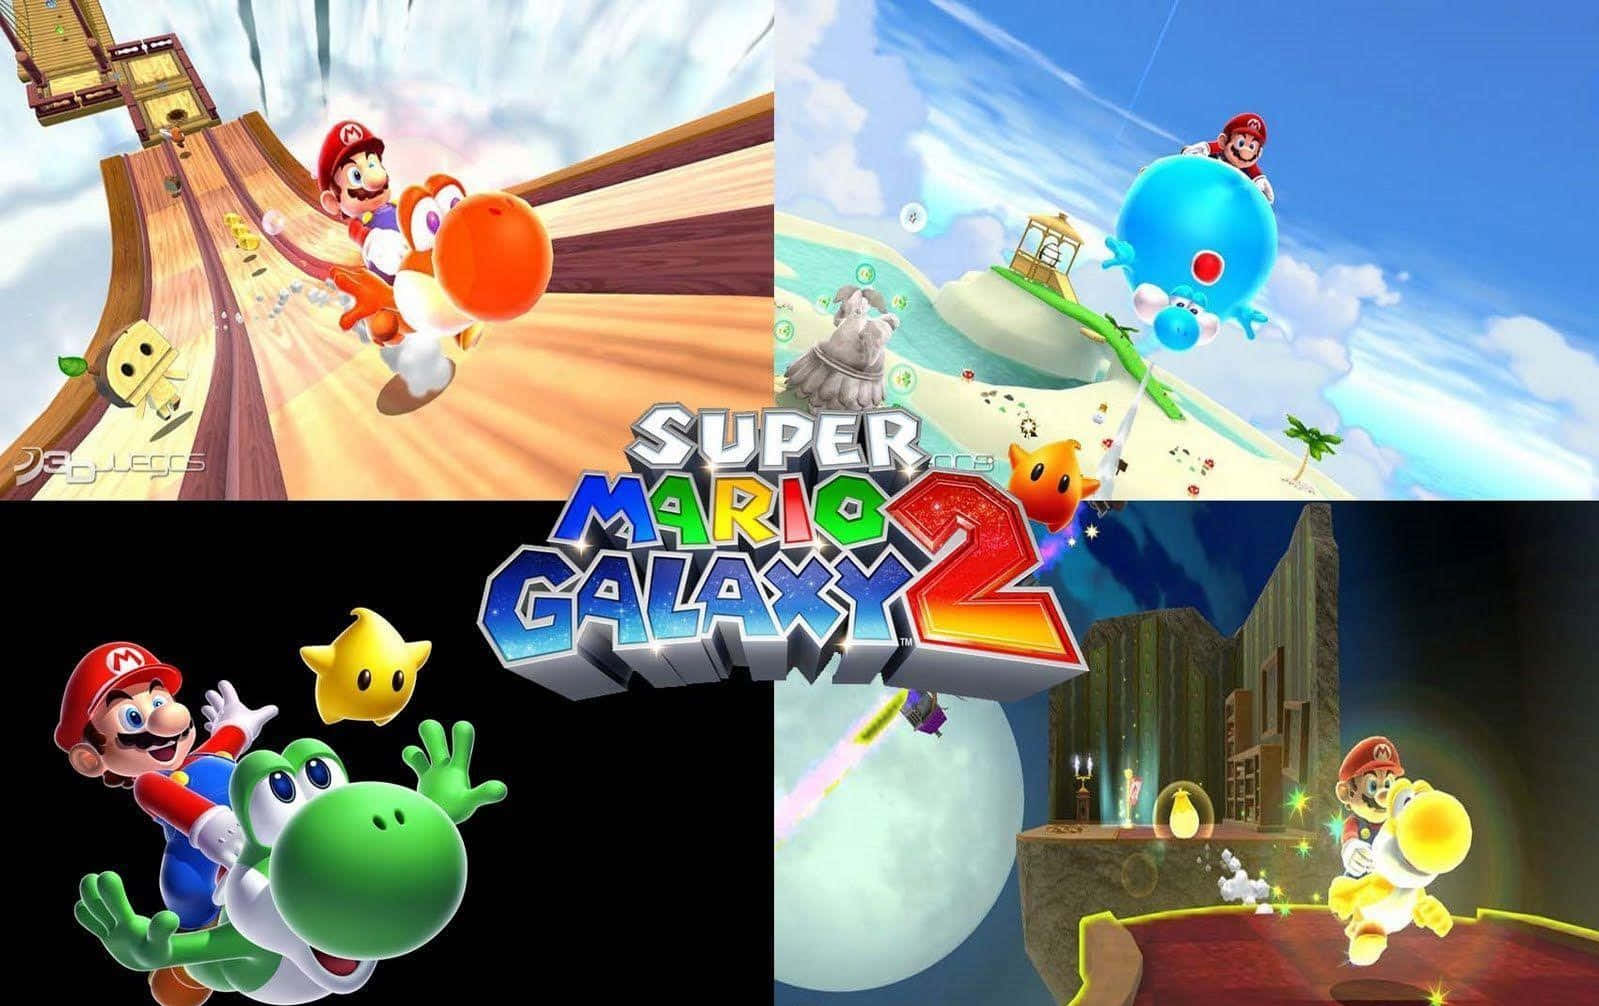 Super Mario Galaxy 2 - Mario and Yoshi Adventure in Space Wallpaper